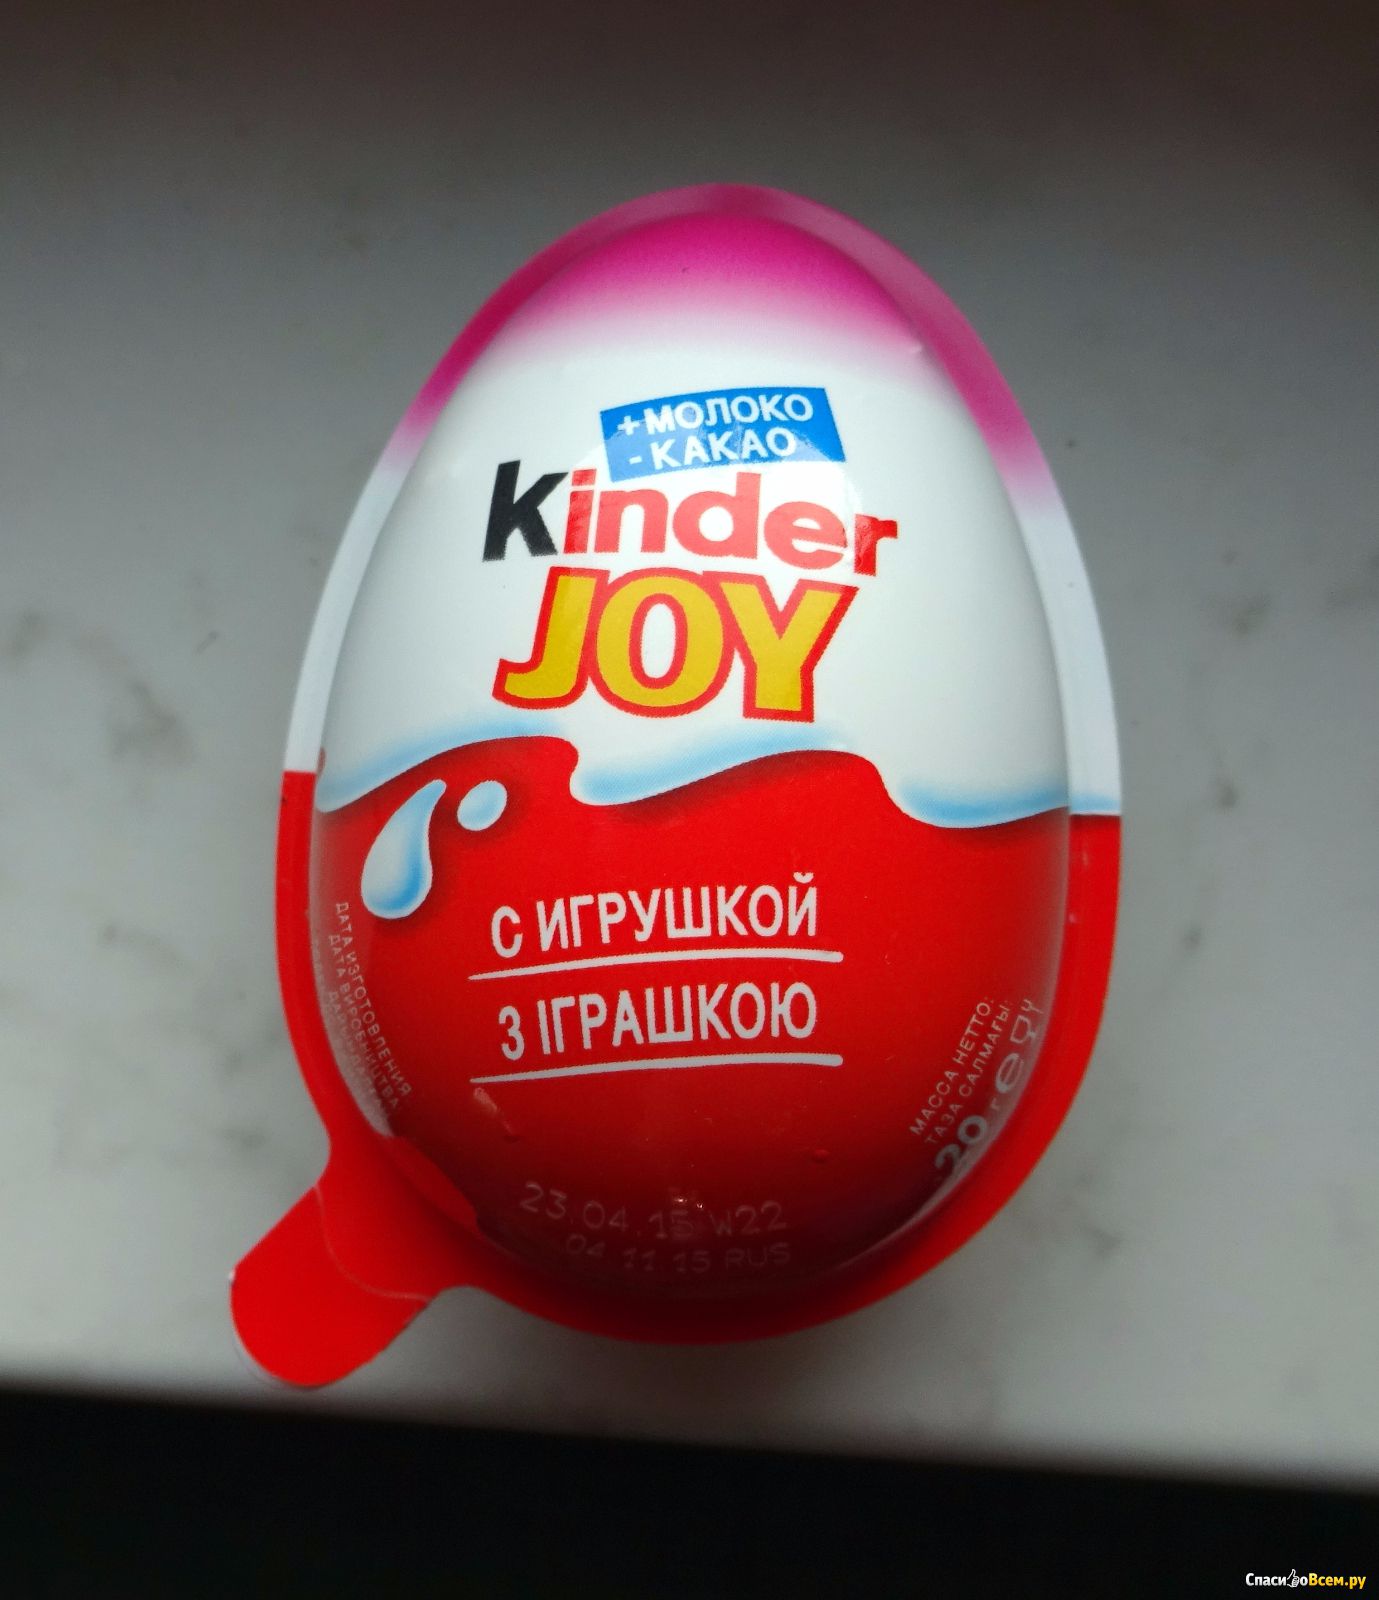 Киндер джой купить. Яйцо Киндер сюрприз Джой. Шоколадное яйцо kinder Joy. Киндер сюрприз и Киндер Джой. Киндер двойное яйцо.